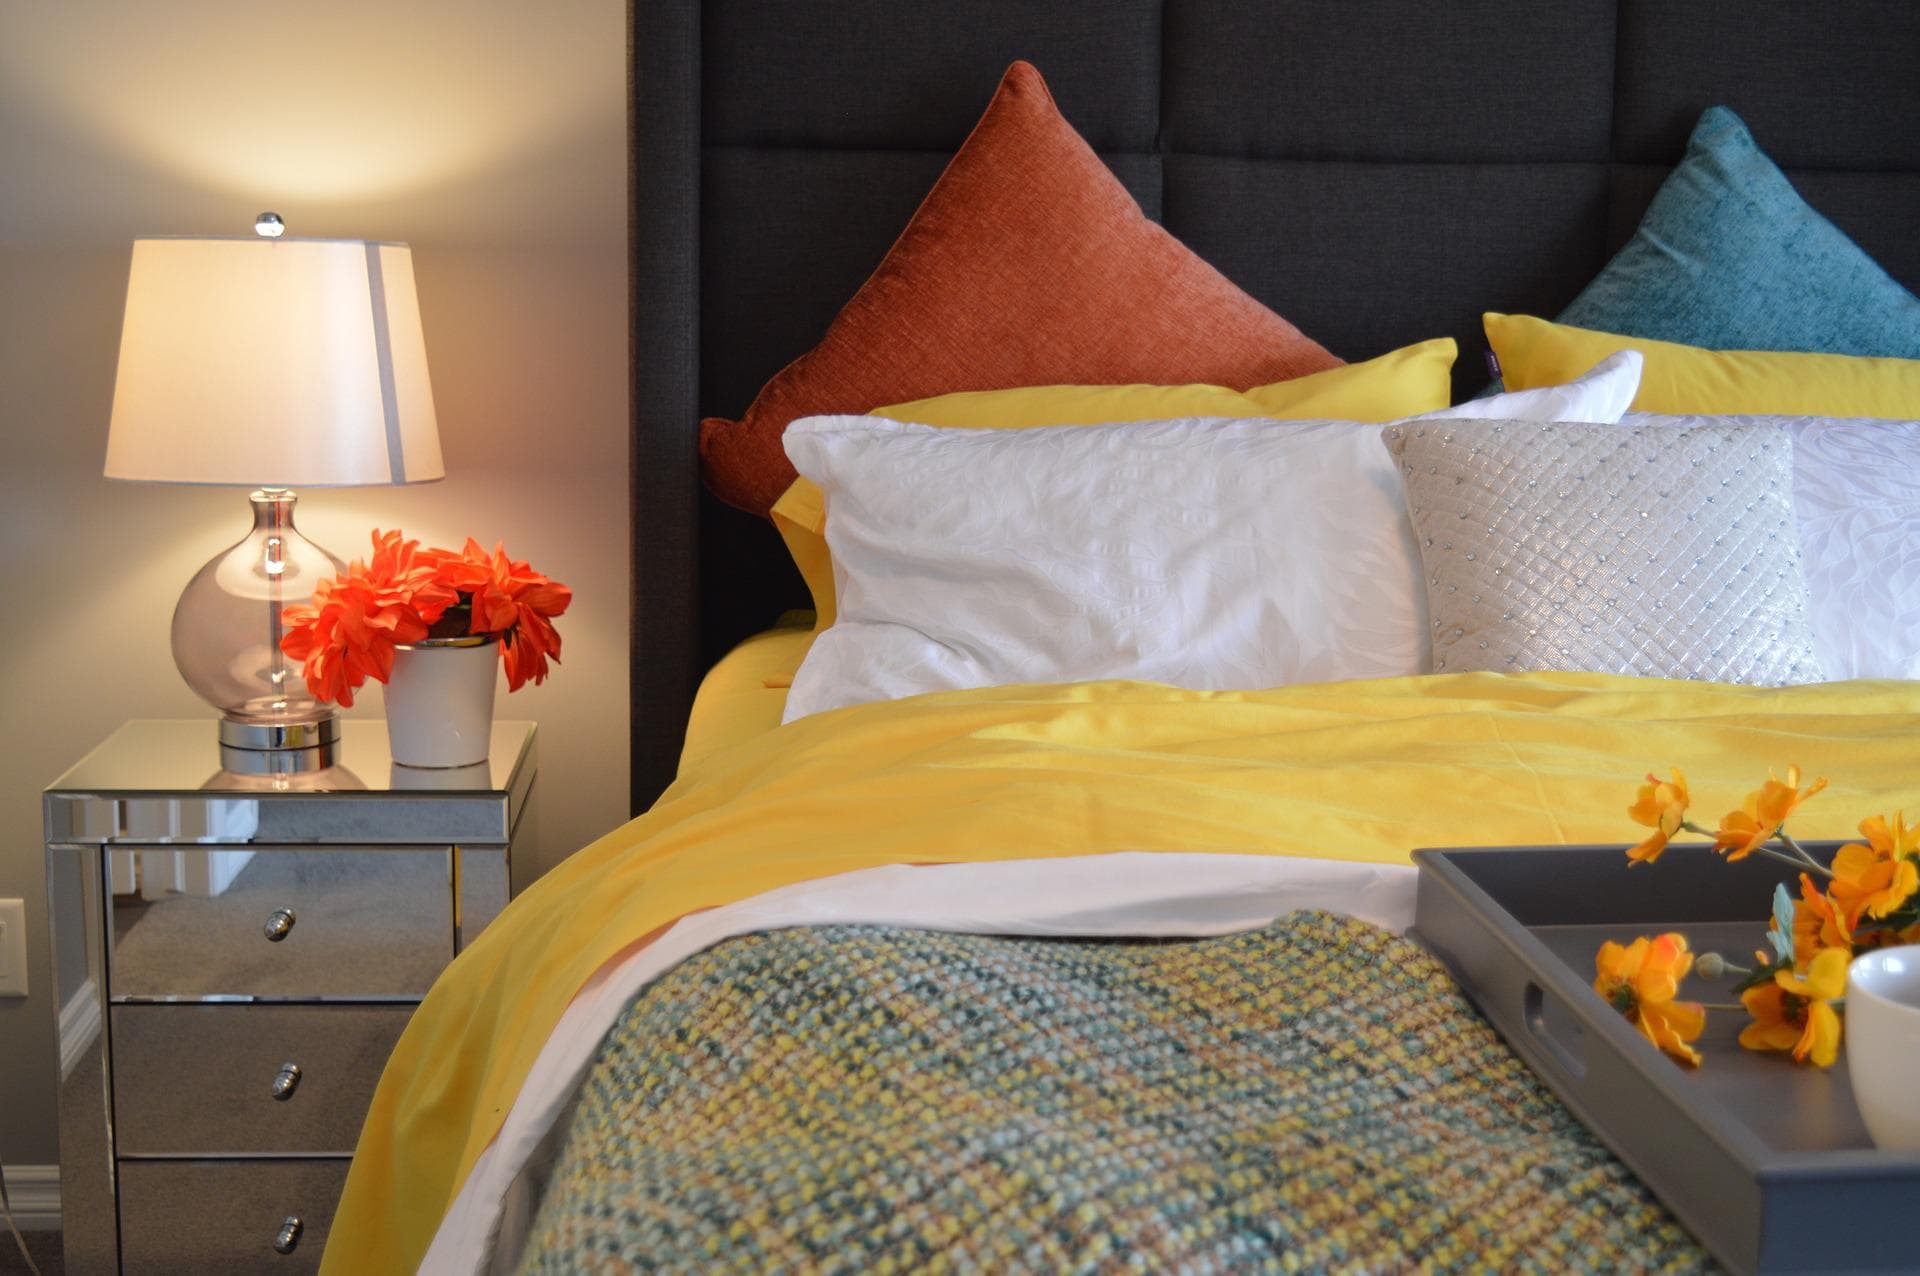 Lire la suite à propos de l’article Guide pour bien disposer vos oreillers et coussins dans votre chambre